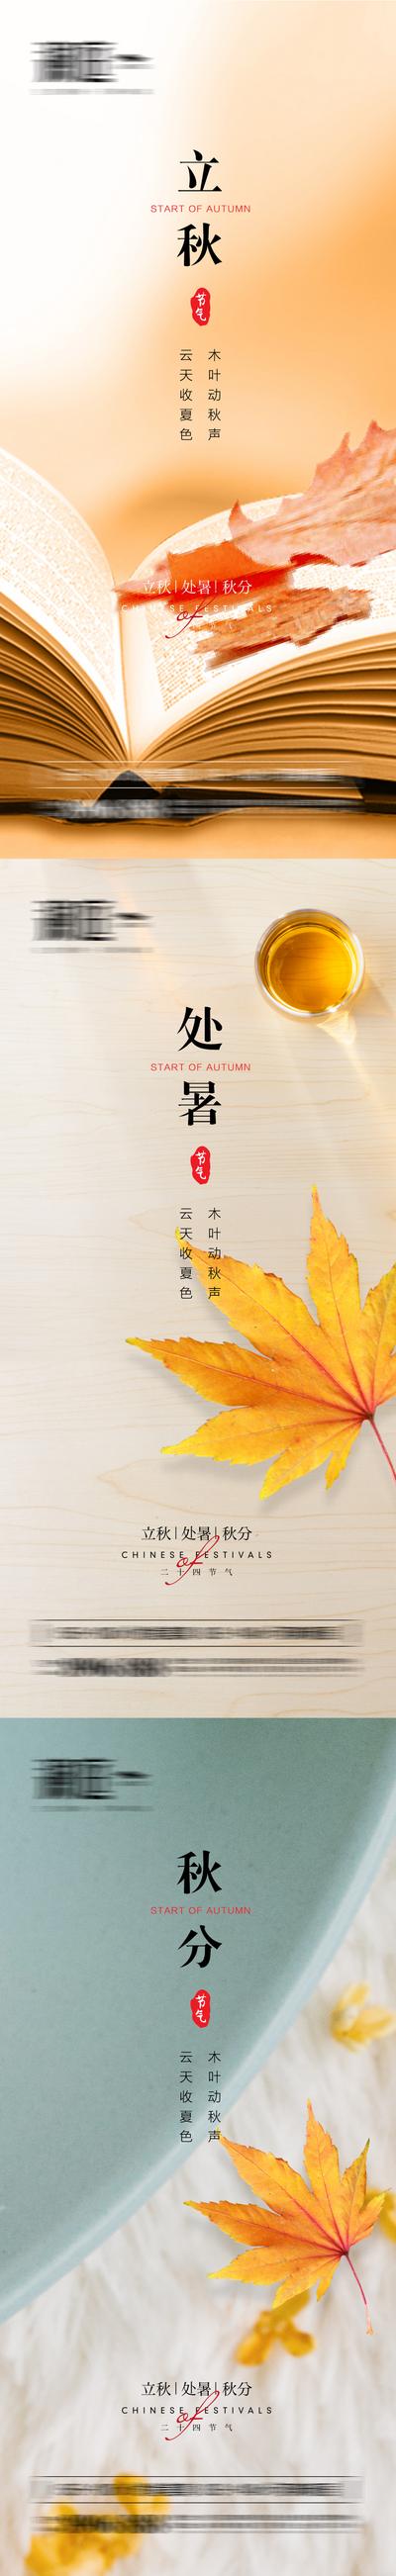 南门网 海报 二十四节气  立秋 处暑 秋分 落叶 系列